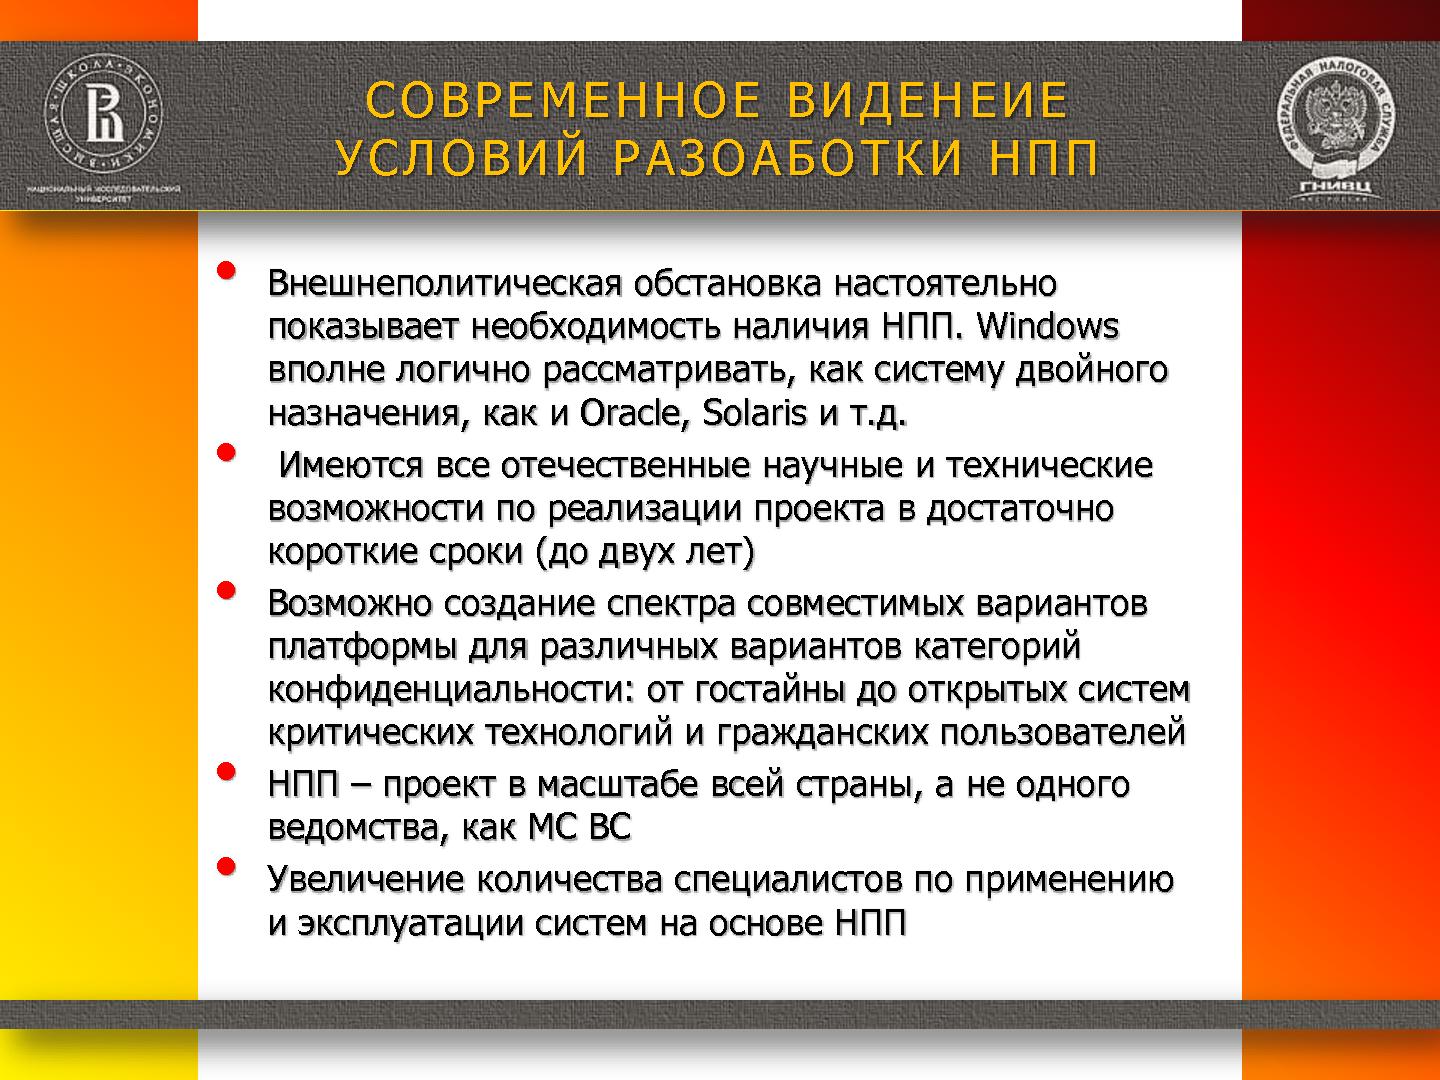 Файл:Необходимые условия создания и широкого применения национальной программной платформы (Александр Баранов, ROSS-2014).pdf